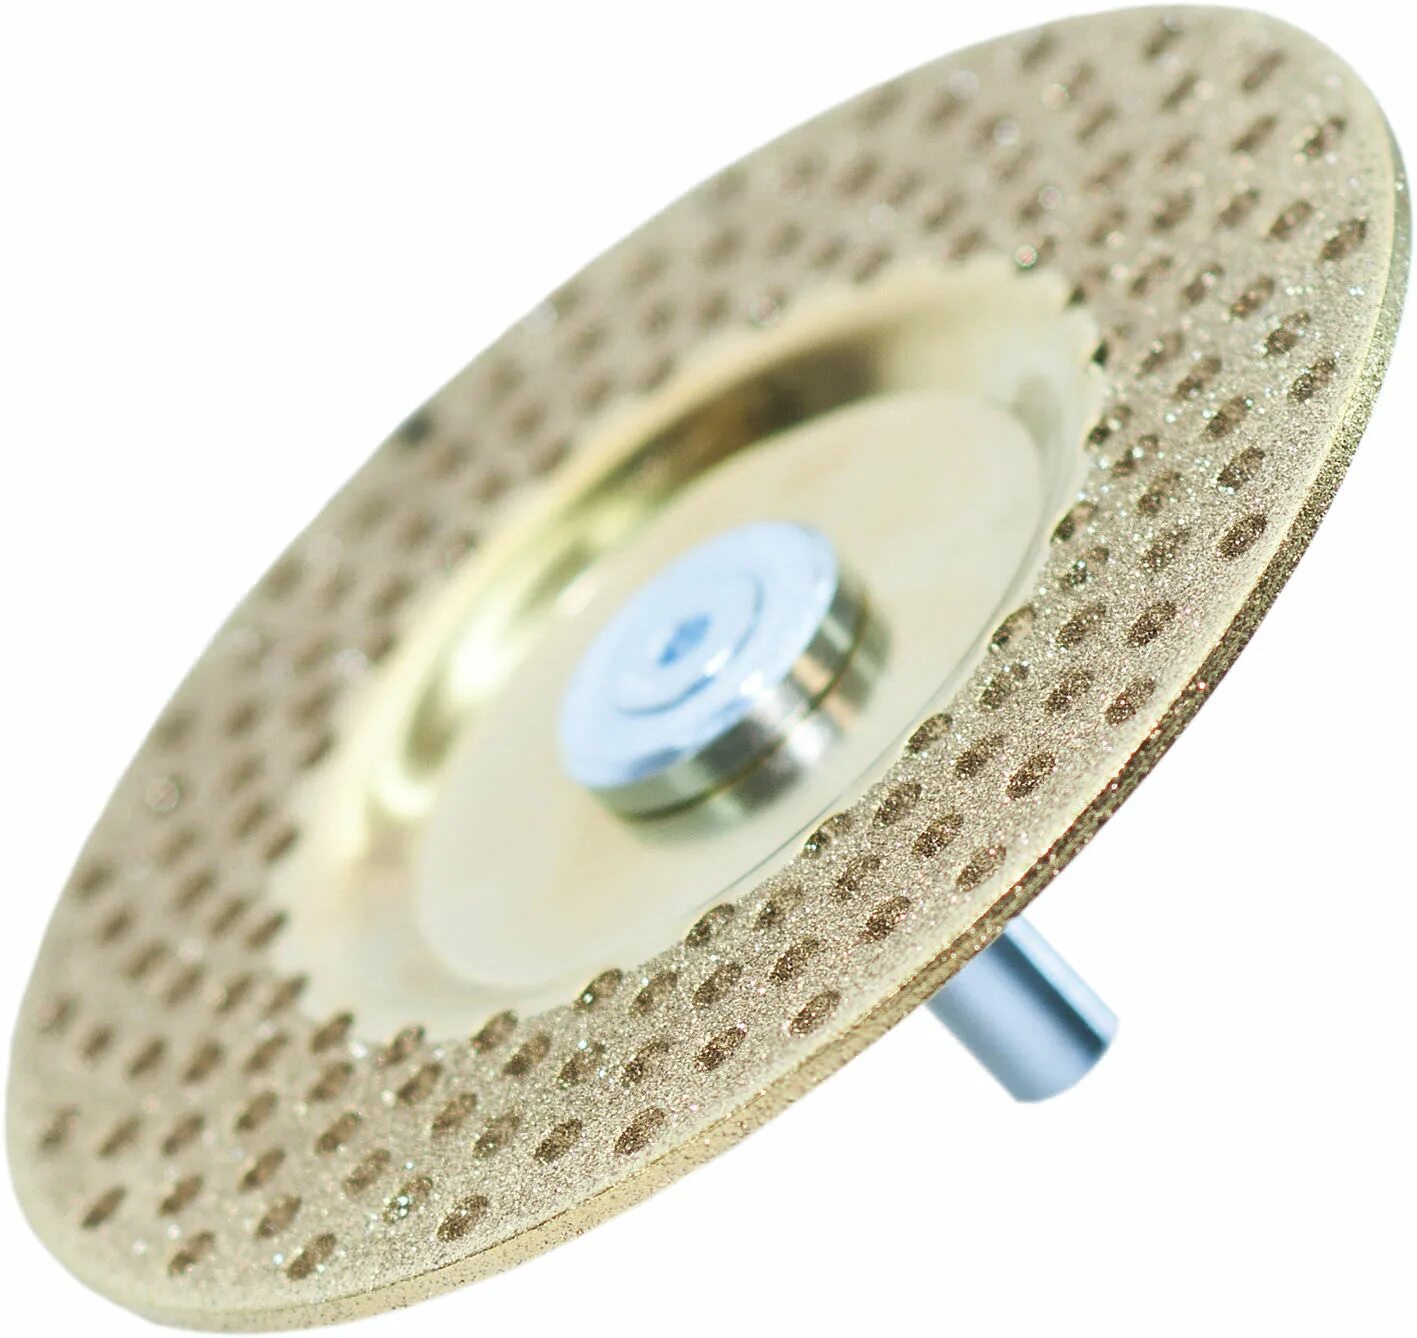 Алмазный круг Kaindl. Диск алмазный для заточки инструмента Кайндл. Алмазный диск Fein. Д-151 заточной алмазный круг шлифовальный.